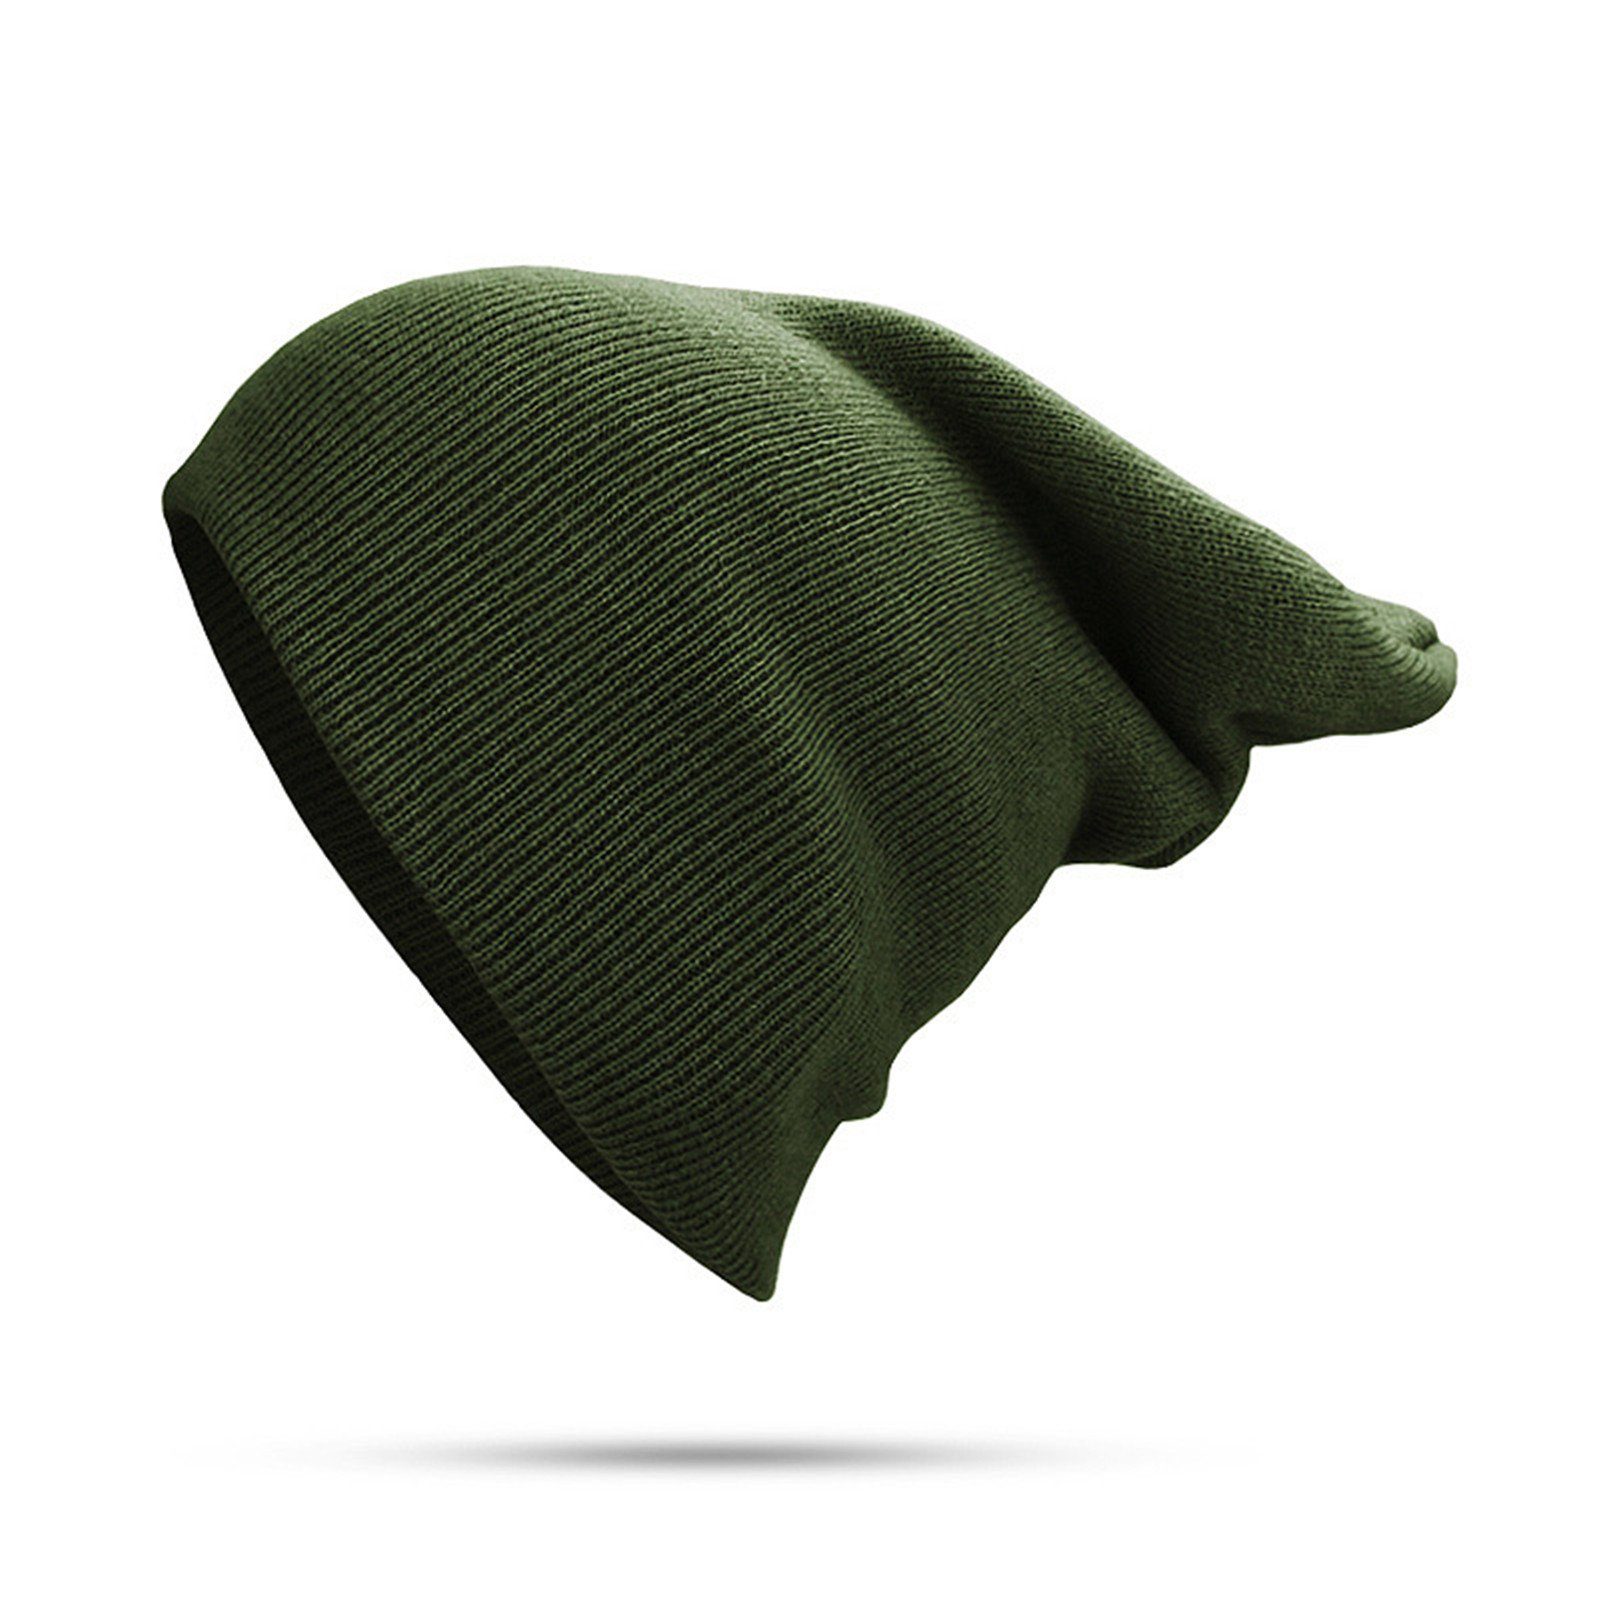 Blusmart Strickmütze Mütze Für Damen Und Herren, Unisex, Mit Bündchen, Einfarbig, Warm Gras-Grün